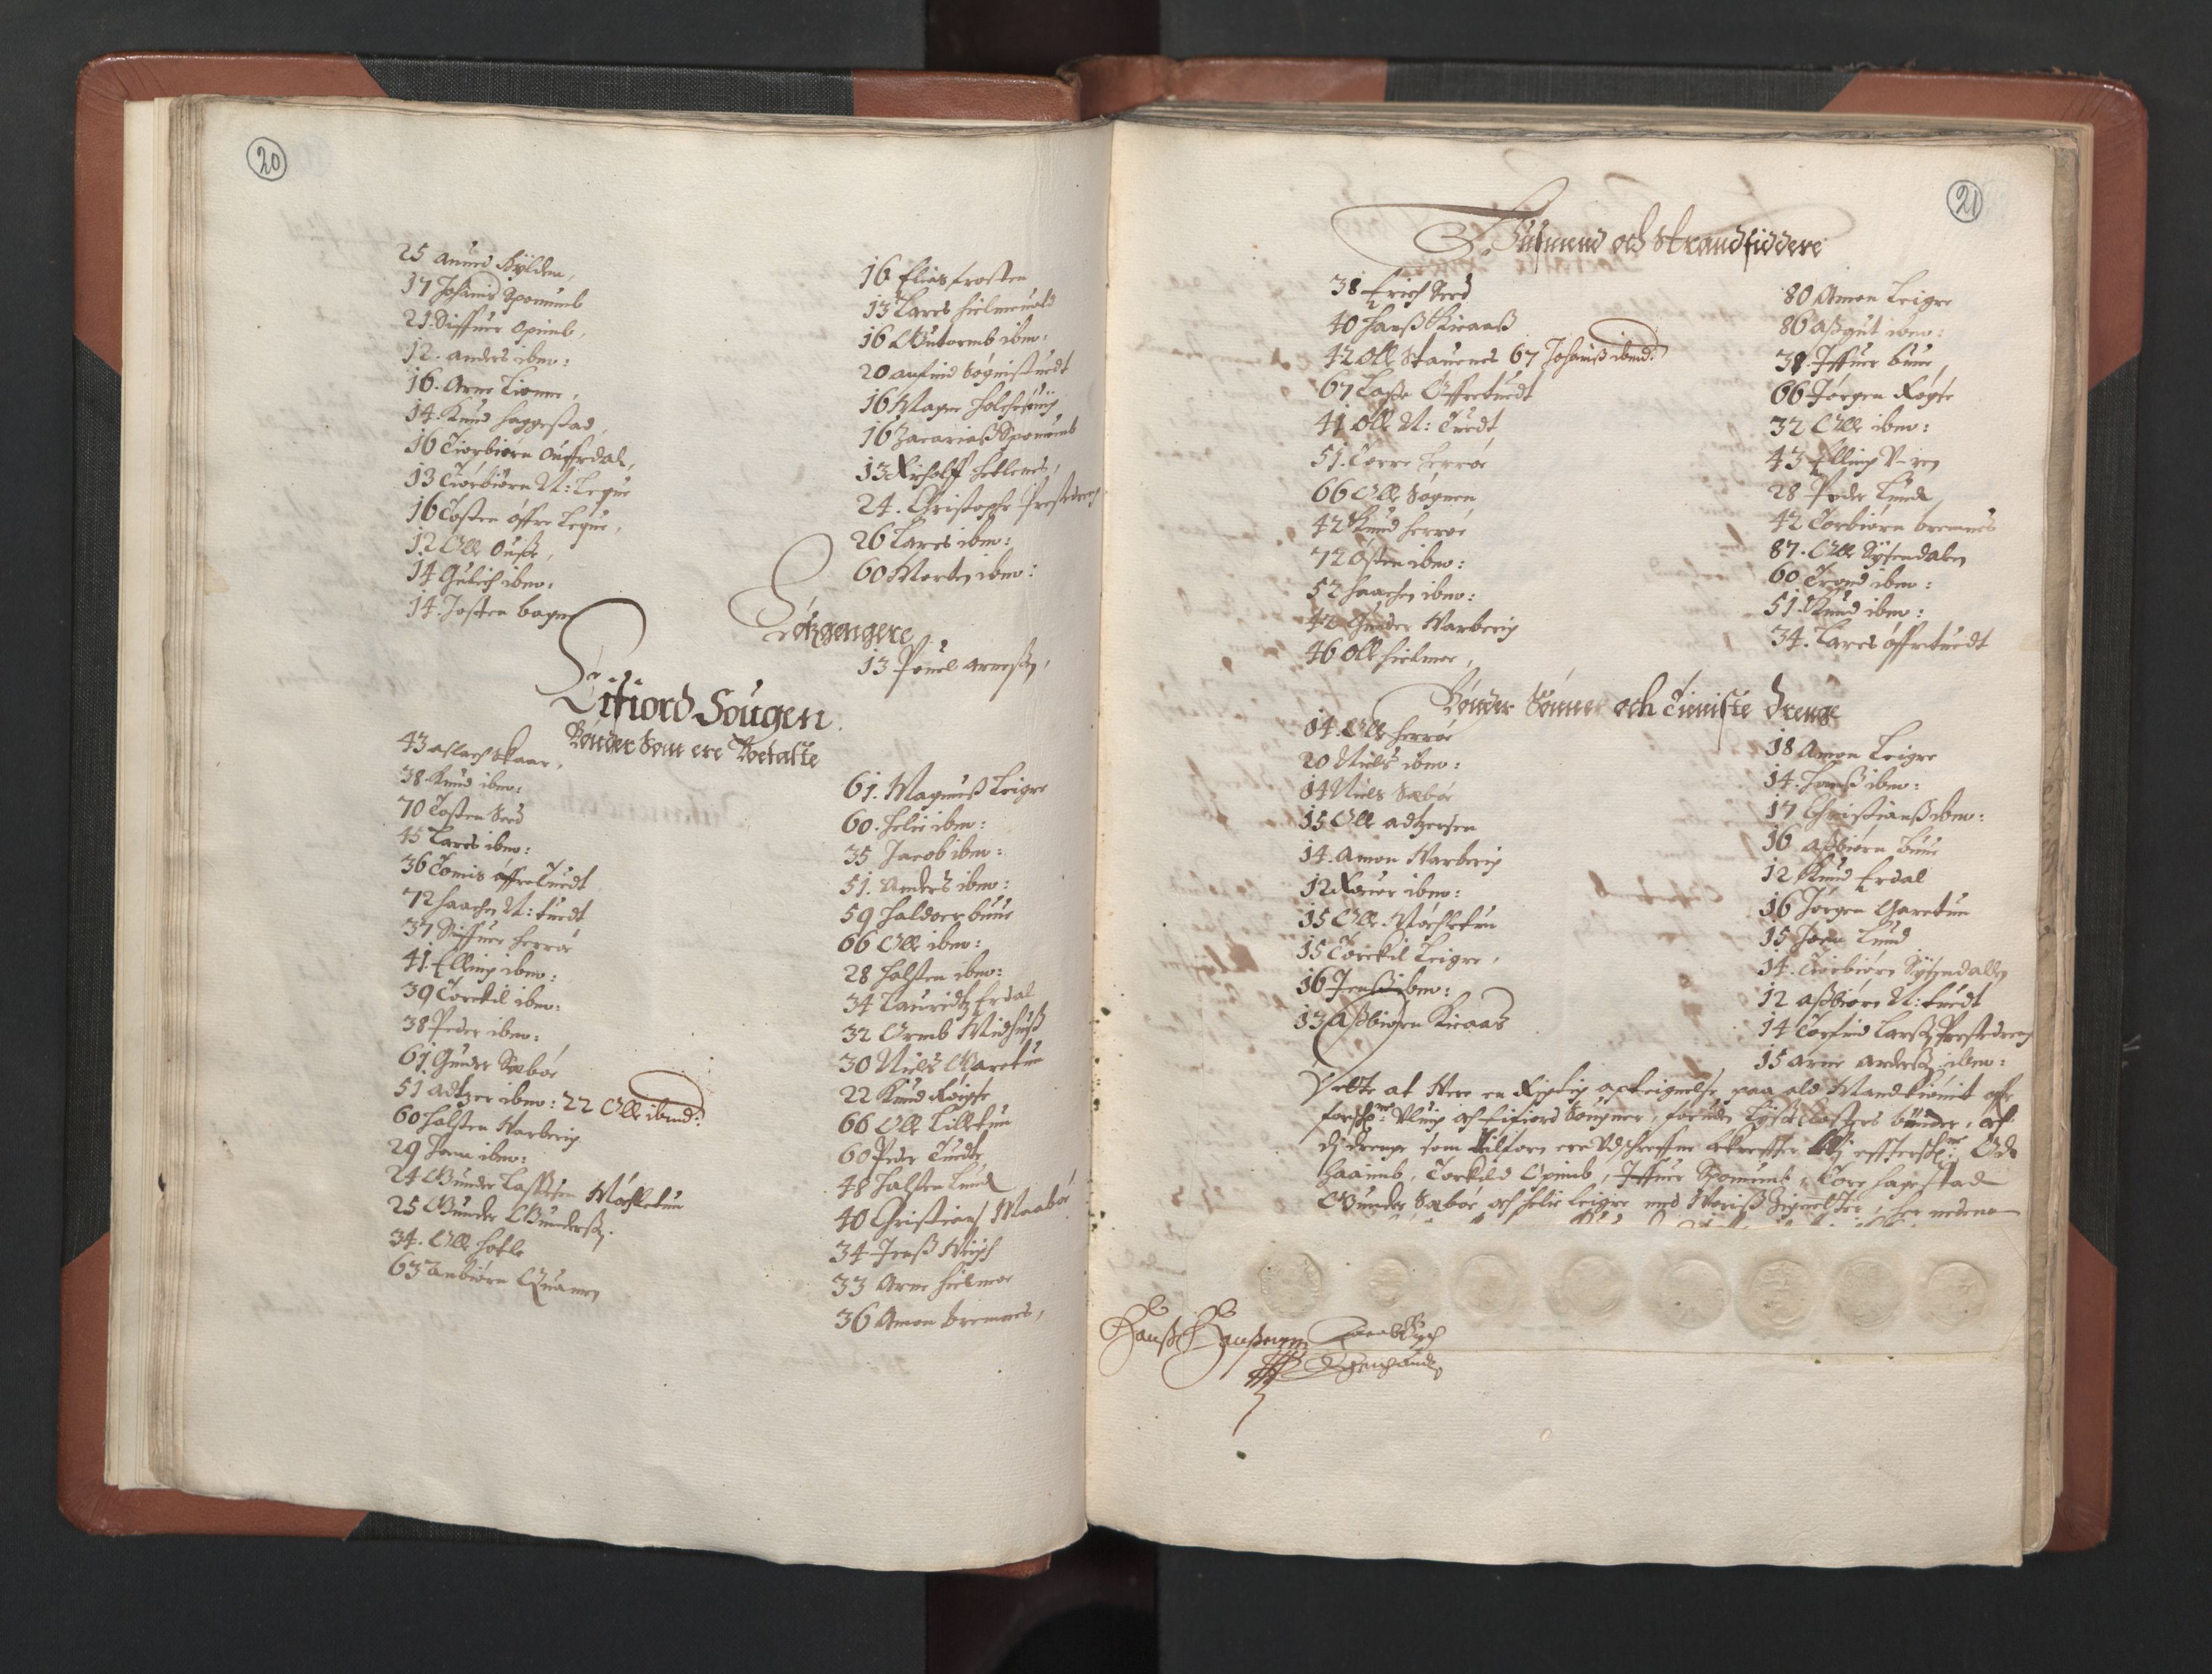 RA, Bailiff's Census 1664-1666, no. 14: Hardanger len, Ytre Sogn fogderi and Indre Sogn fogderi, 1664-1665, p. 20-21